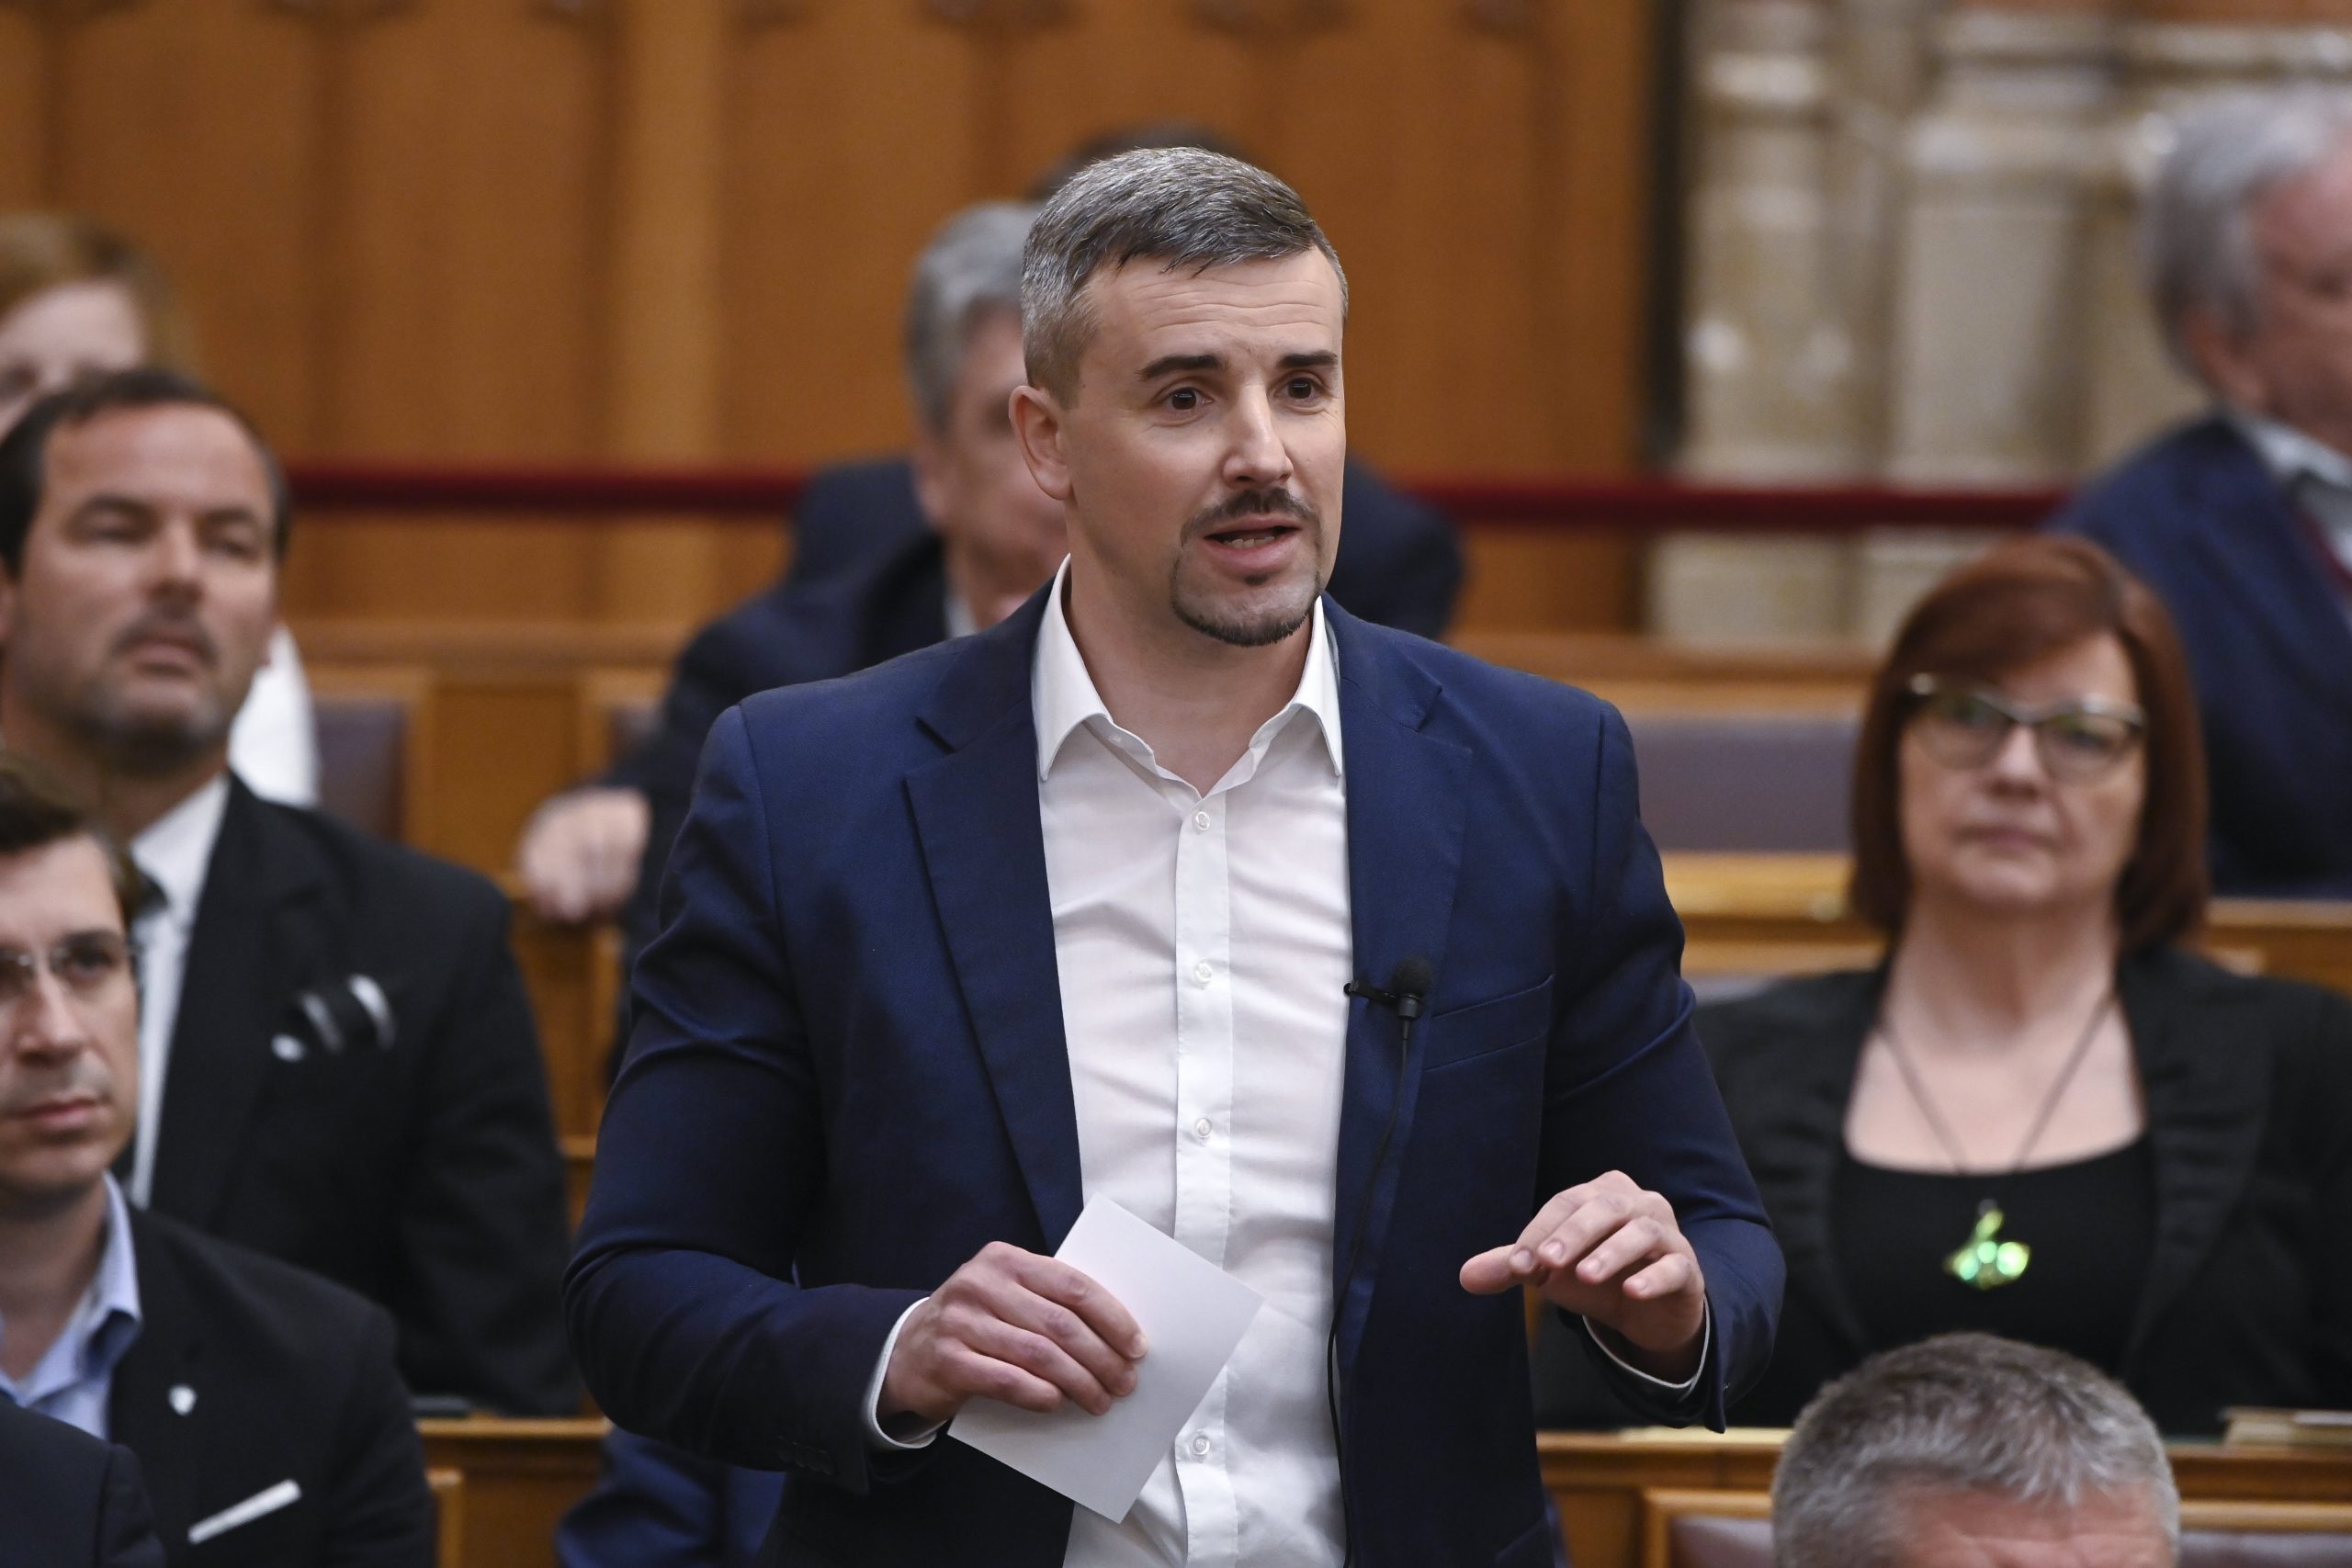 Péter Jakab, Vorsitzender der nationalistischen Jobbik-Partei, ist zurückgetreten